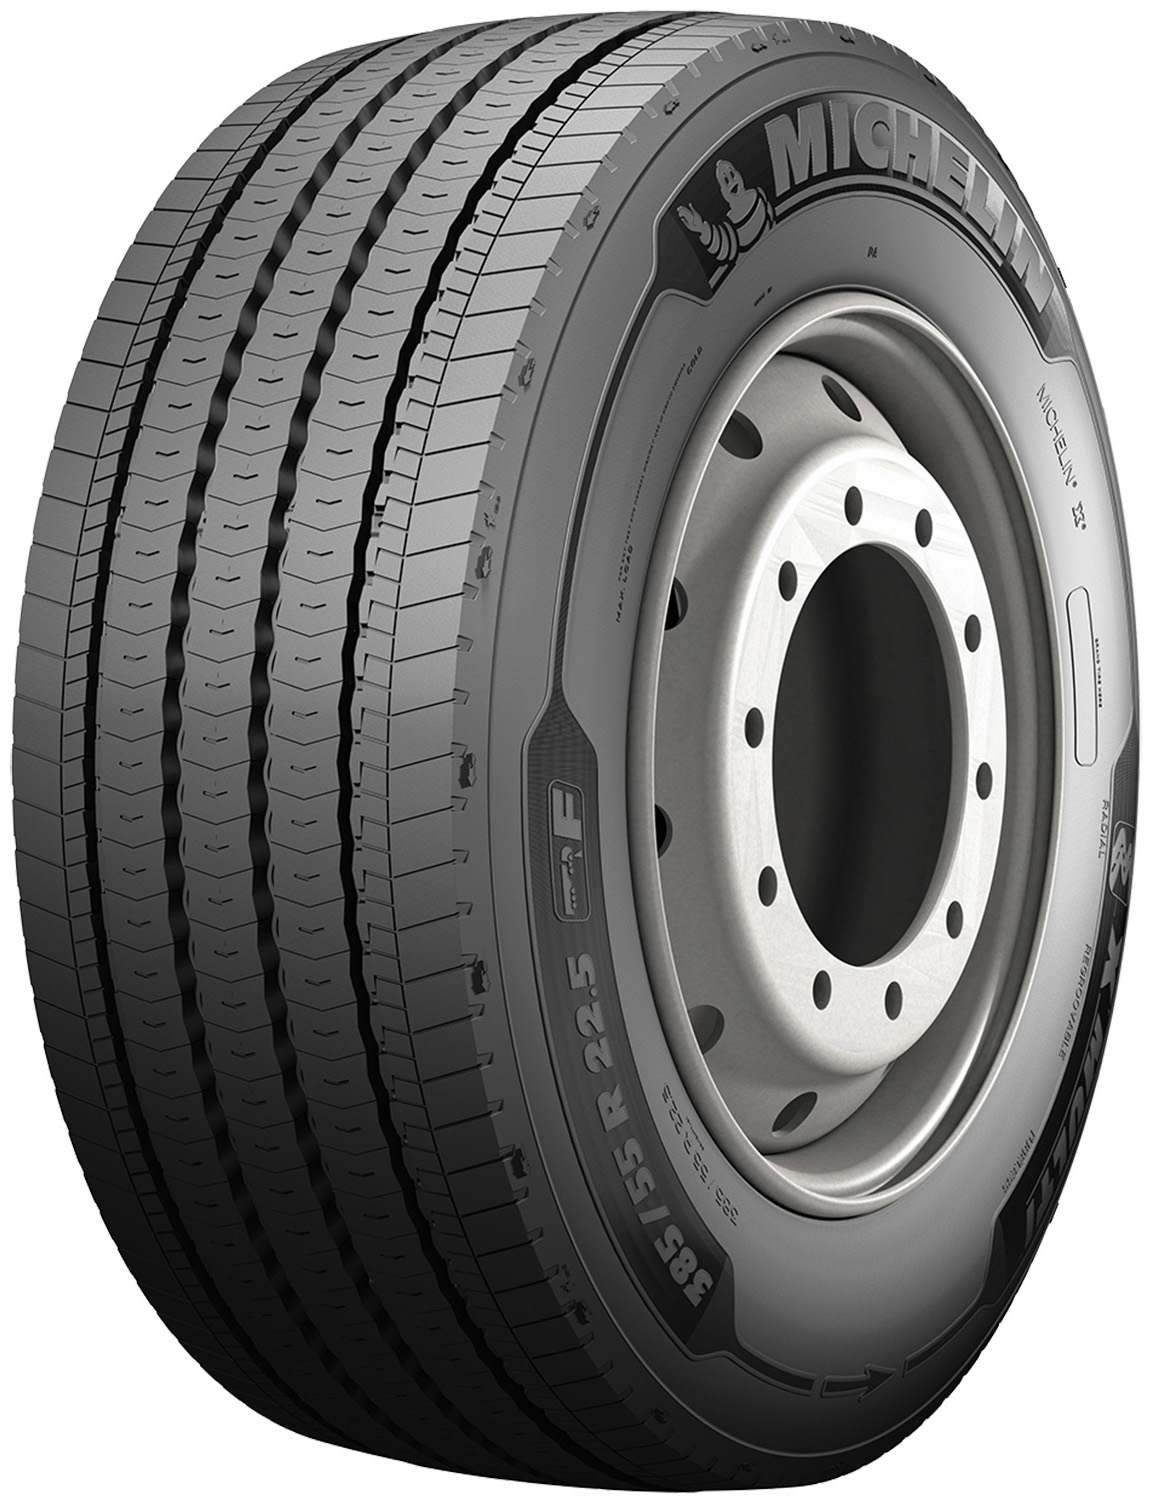 Gomme Nuove Michelin 385/55 R22.5 160/158K X MULTI F M+S (8.00mm) pneumatici nuovi Estivo